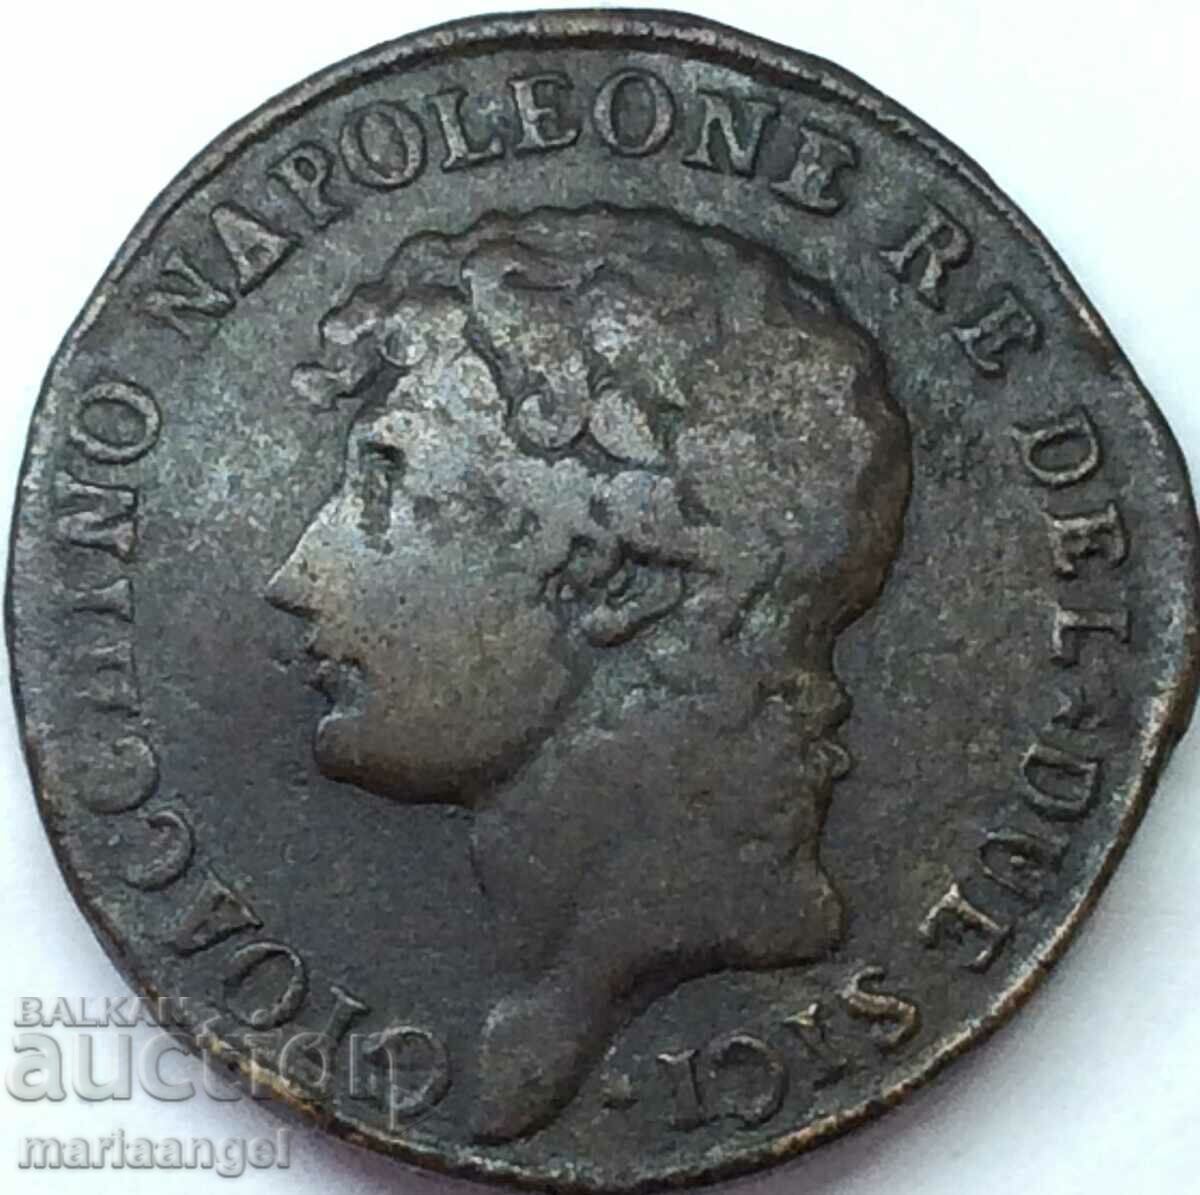 Murat Napoleon 2 grains 1810 Italy 29mm 11,67g bronze